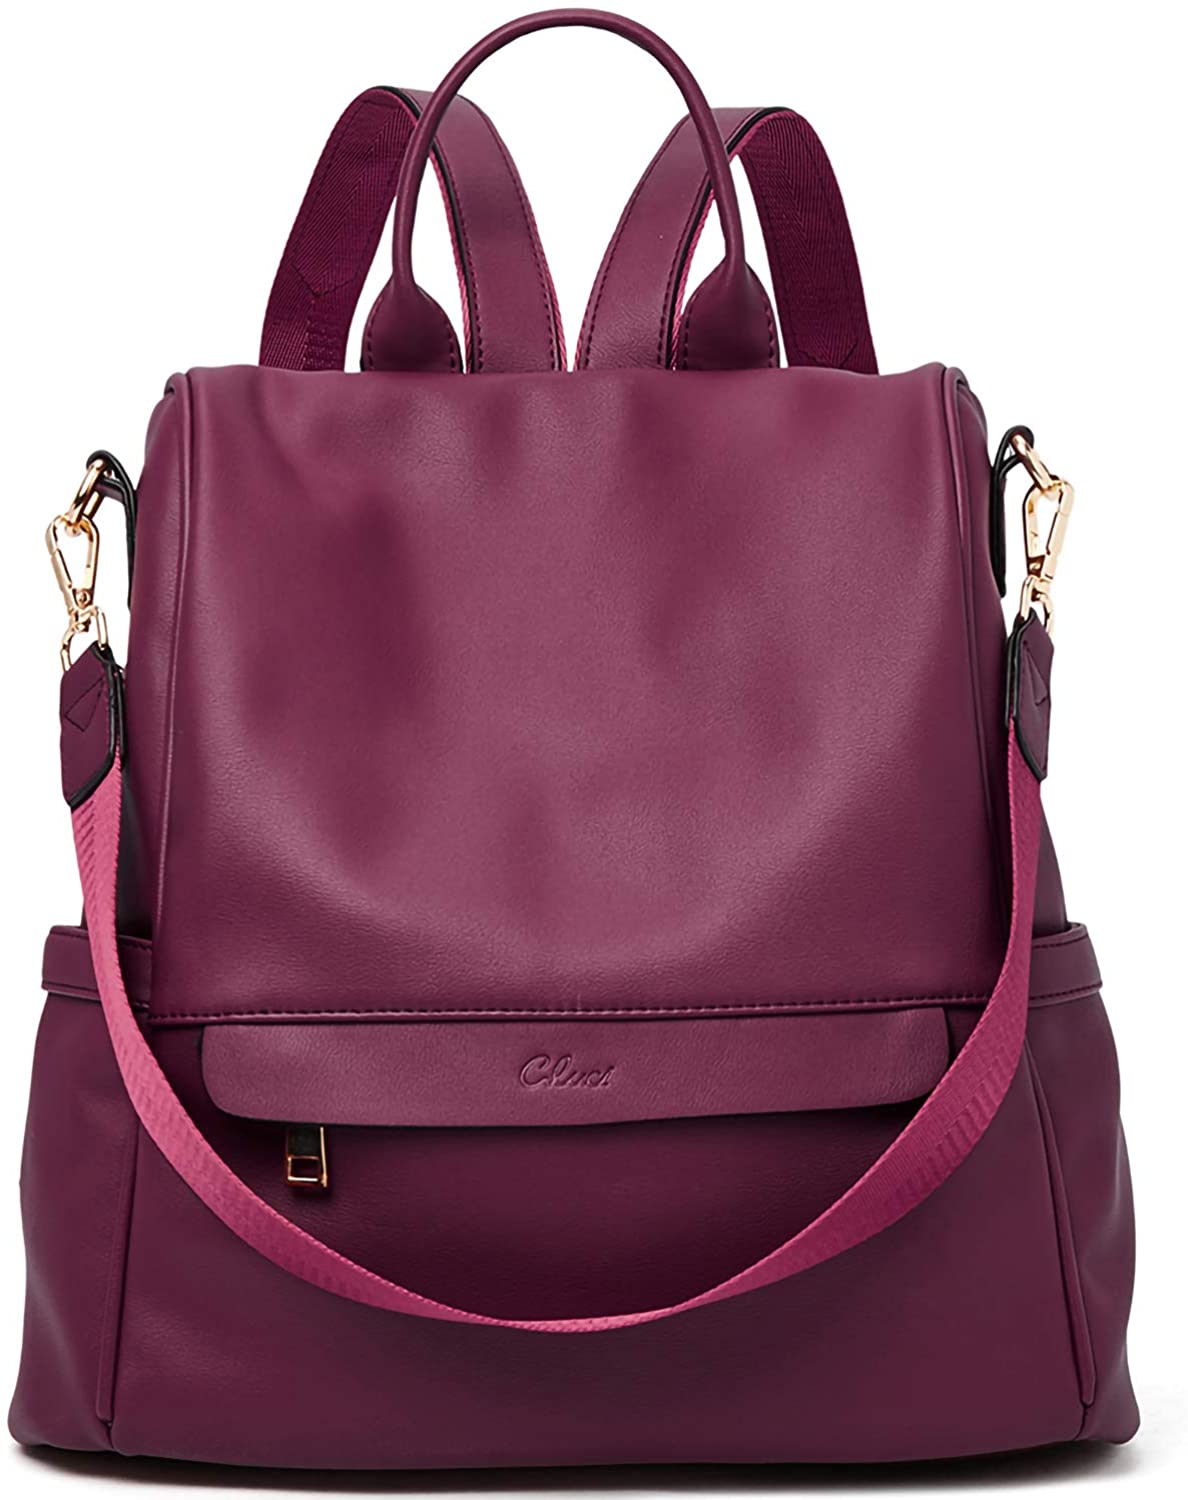 CLUCI Women/'s Backpack Fashion Designer Leather Handbag Large Travel Bags Ladies Shoulder Bag